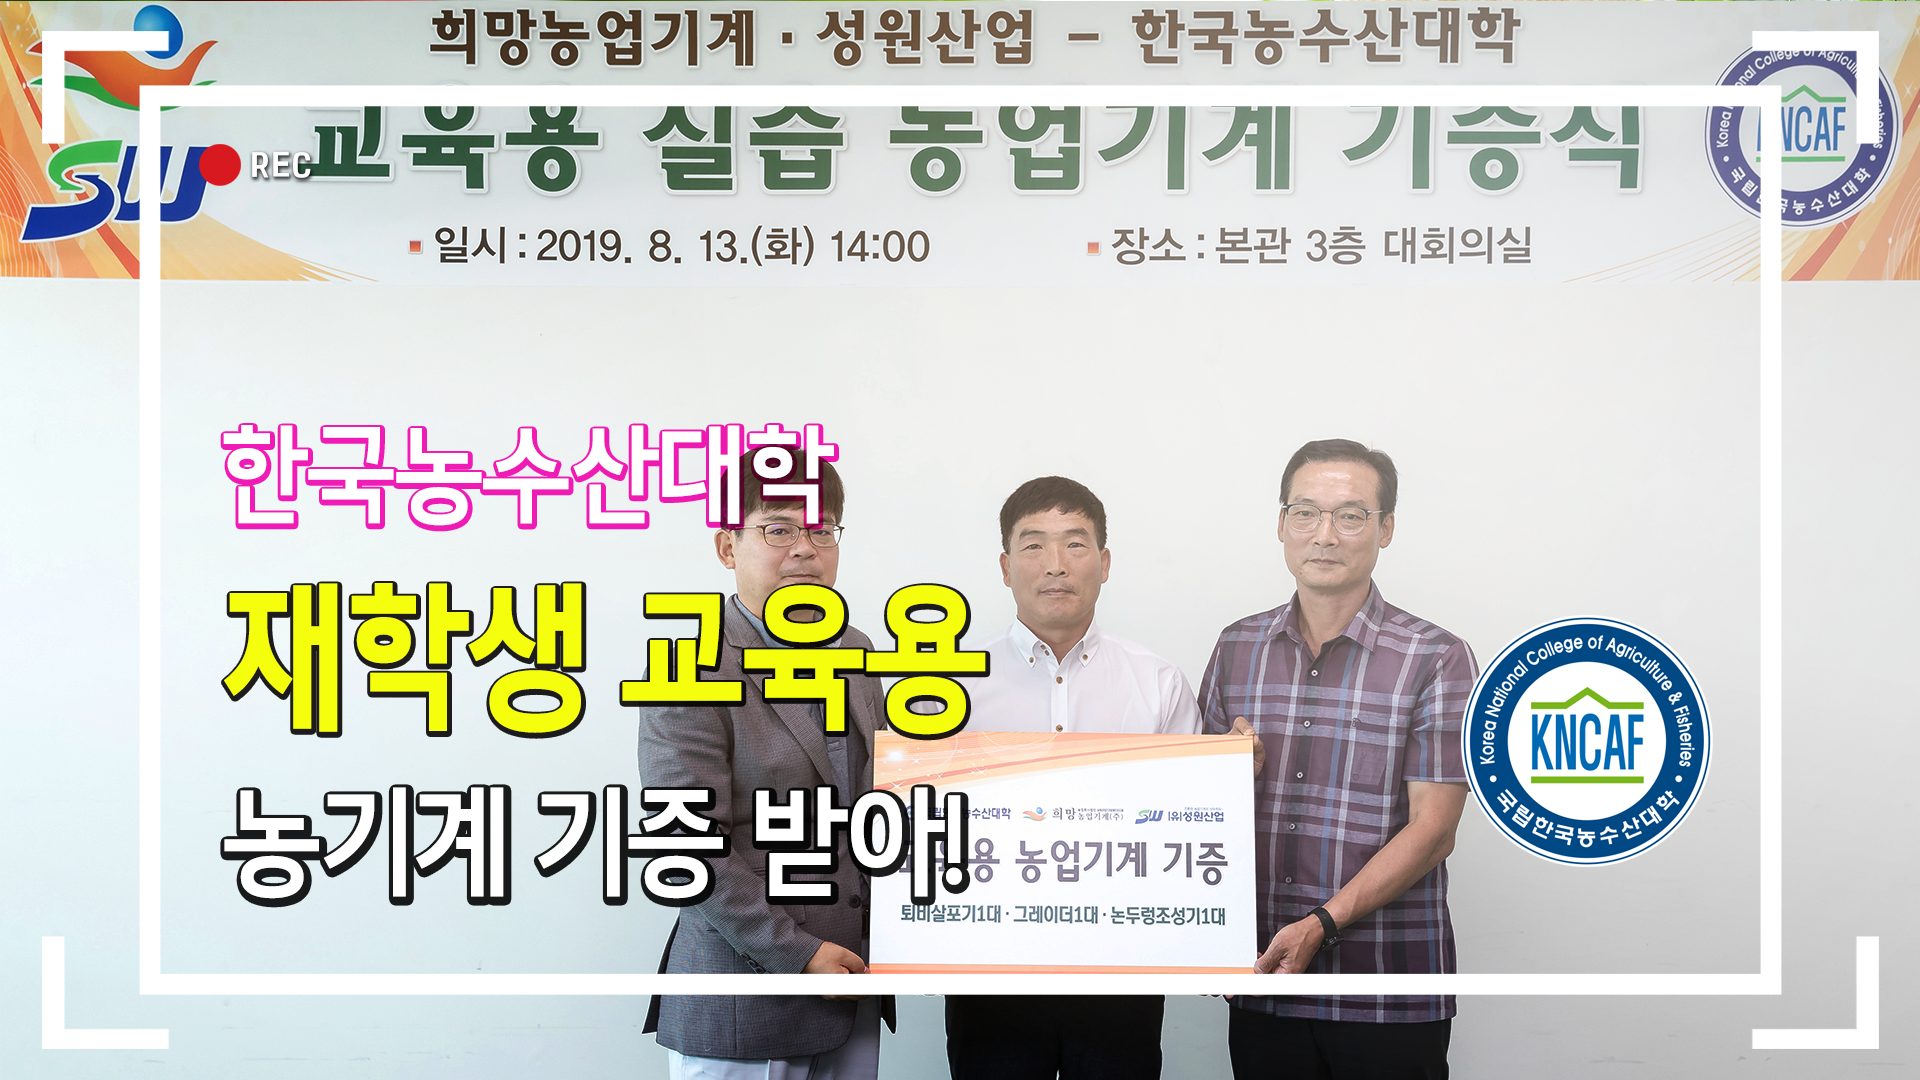 한국농수산대학, 재학생 실습용 농기계 3대 기증 받아